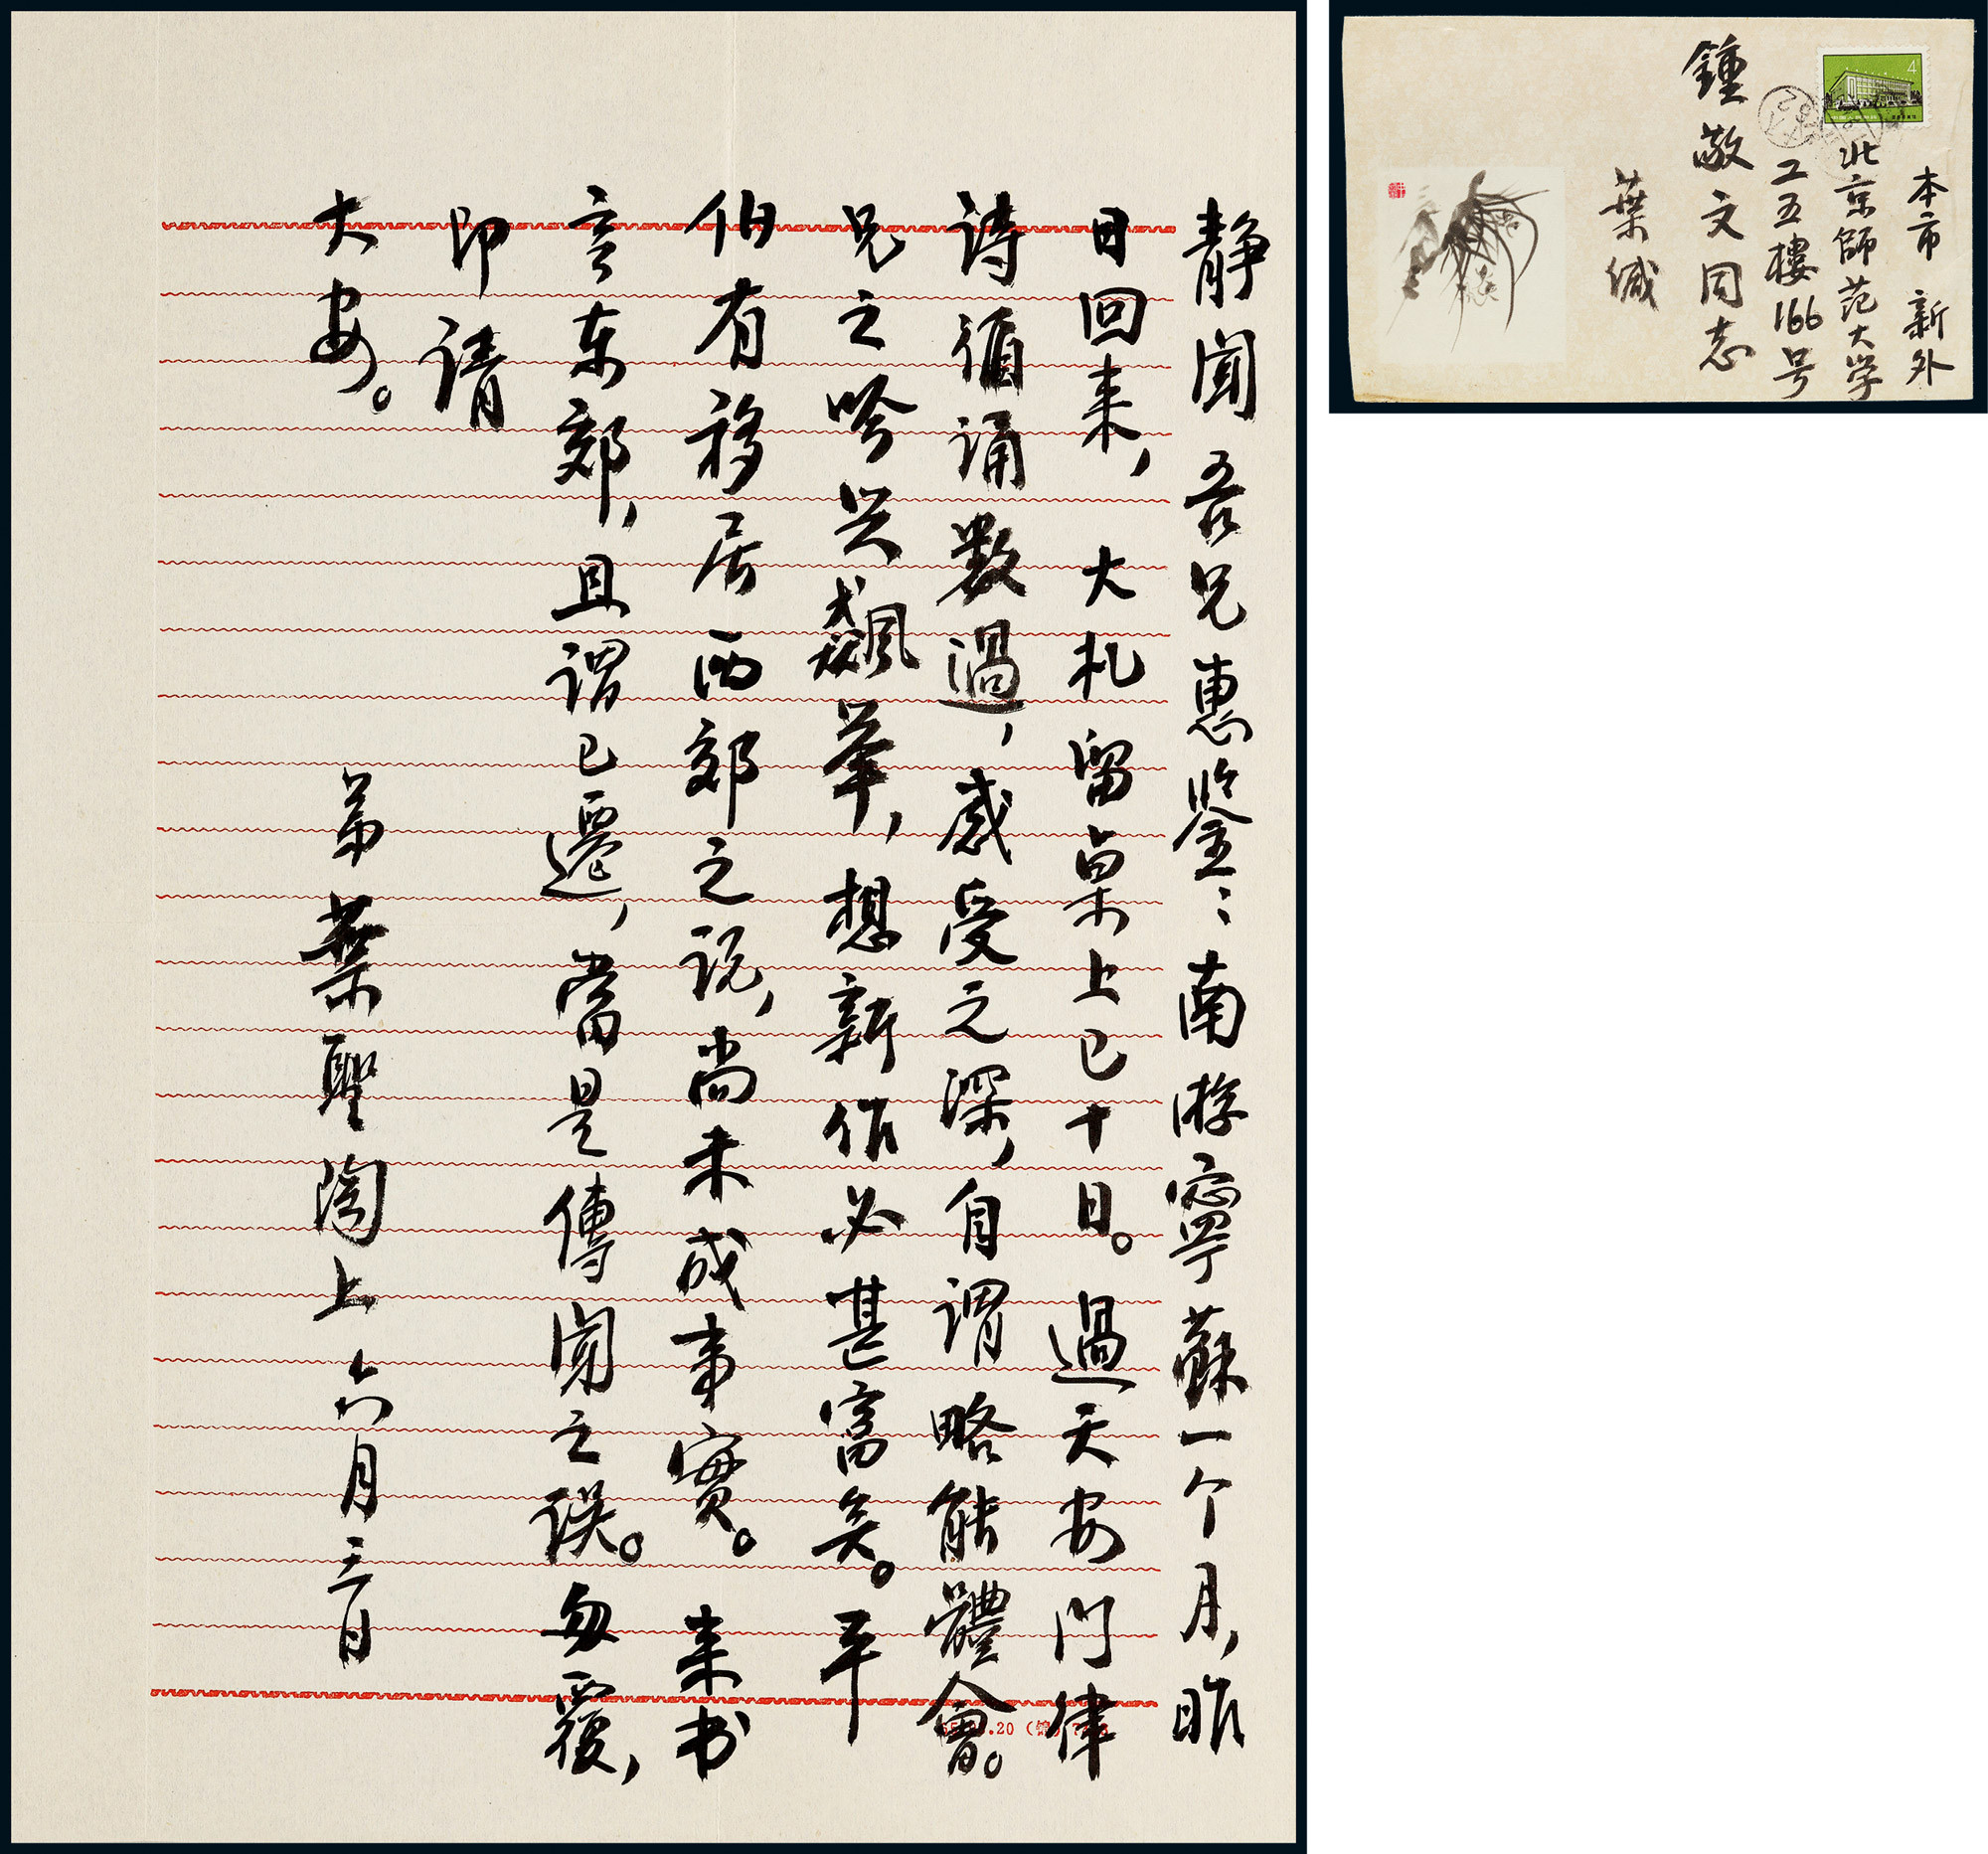 A letter from Ye Shengtao to Zhong Jingwen, with original envelope